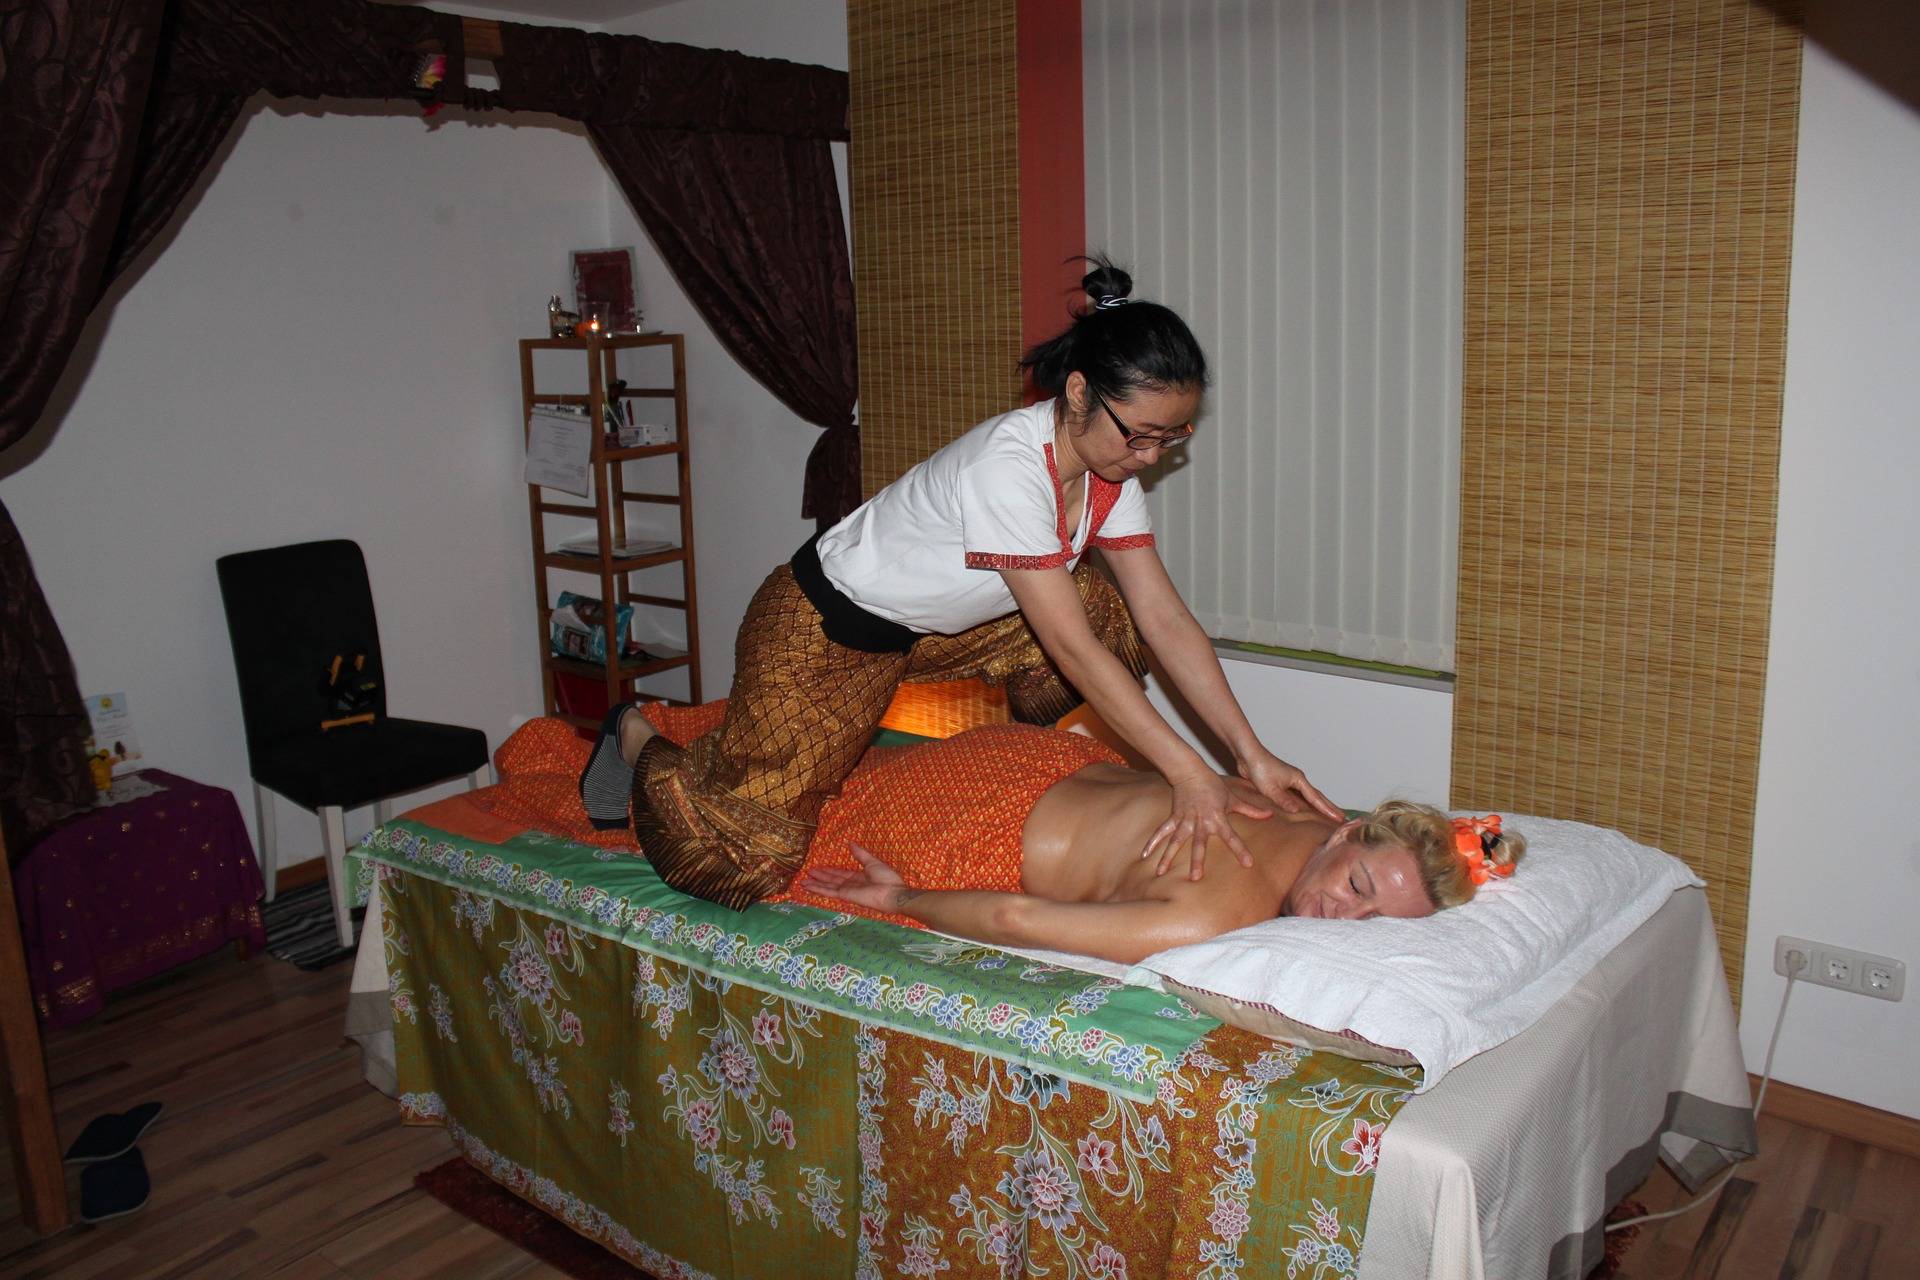 Боди массаж (body massage) - полезные советы